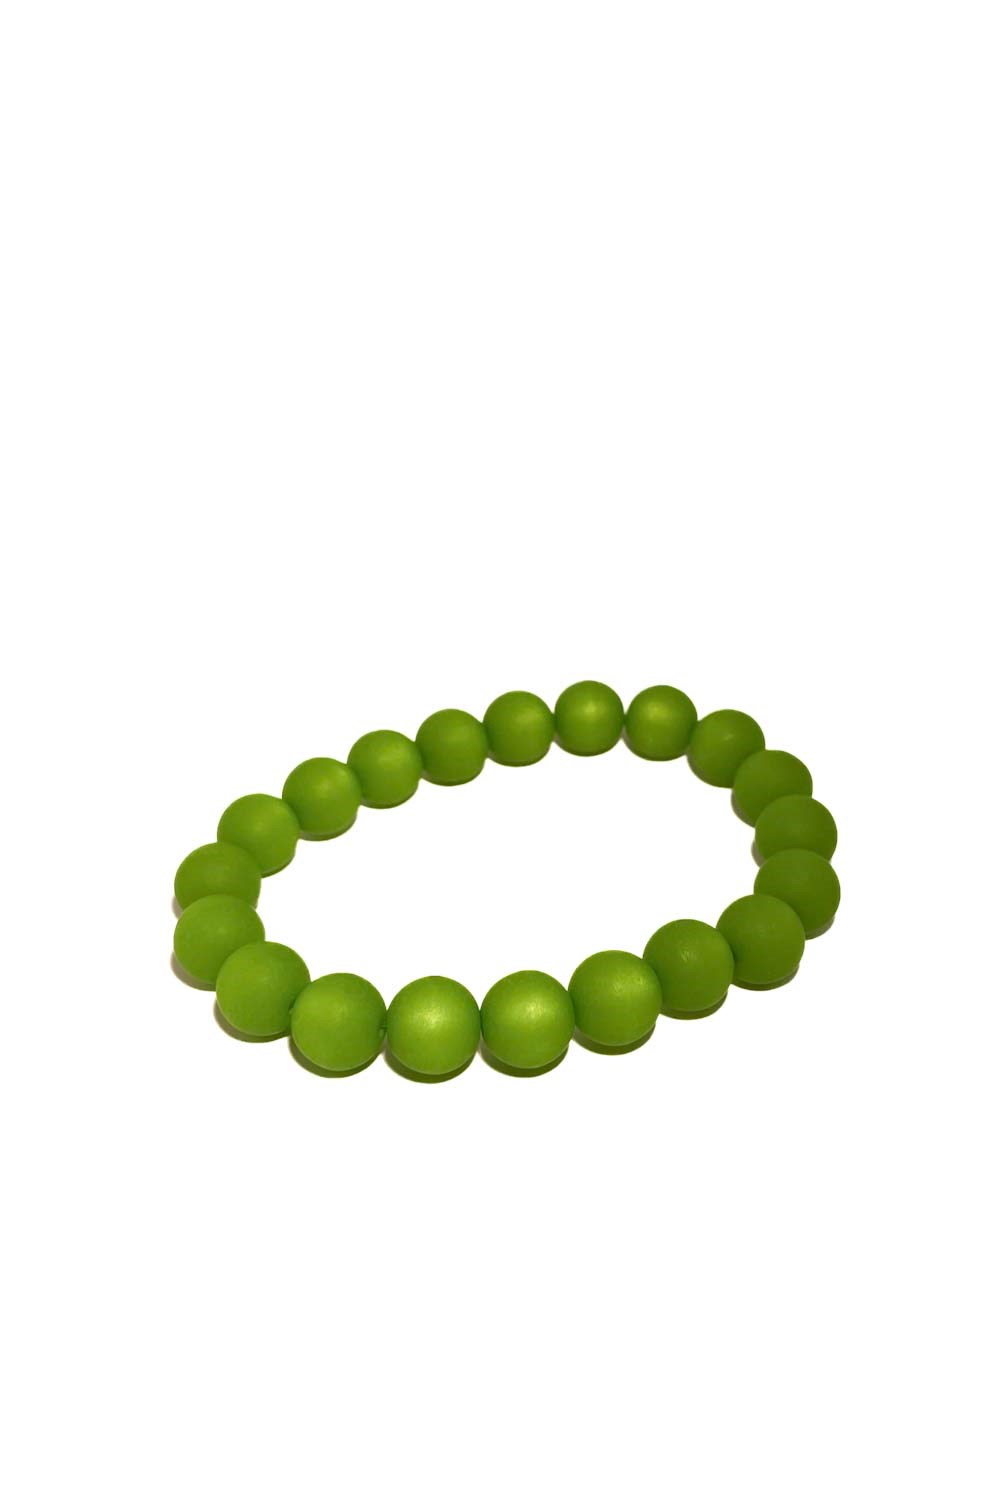 Bracelet resin green